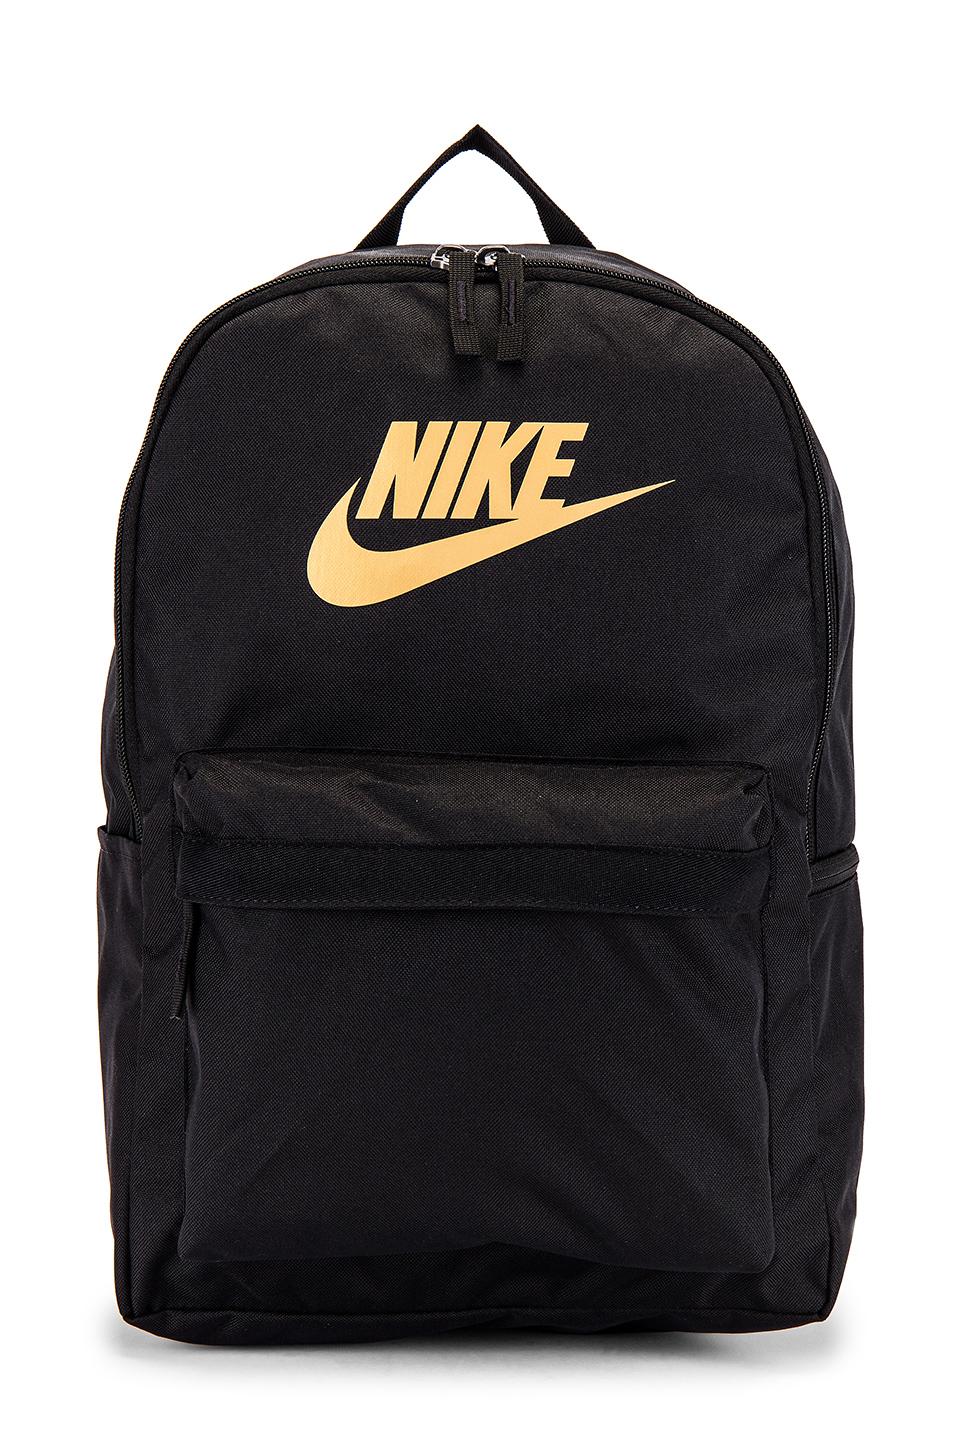 Nike Nk Heritage Backpack 2.0 in Black & Metallic Gold (Black) - Lyst